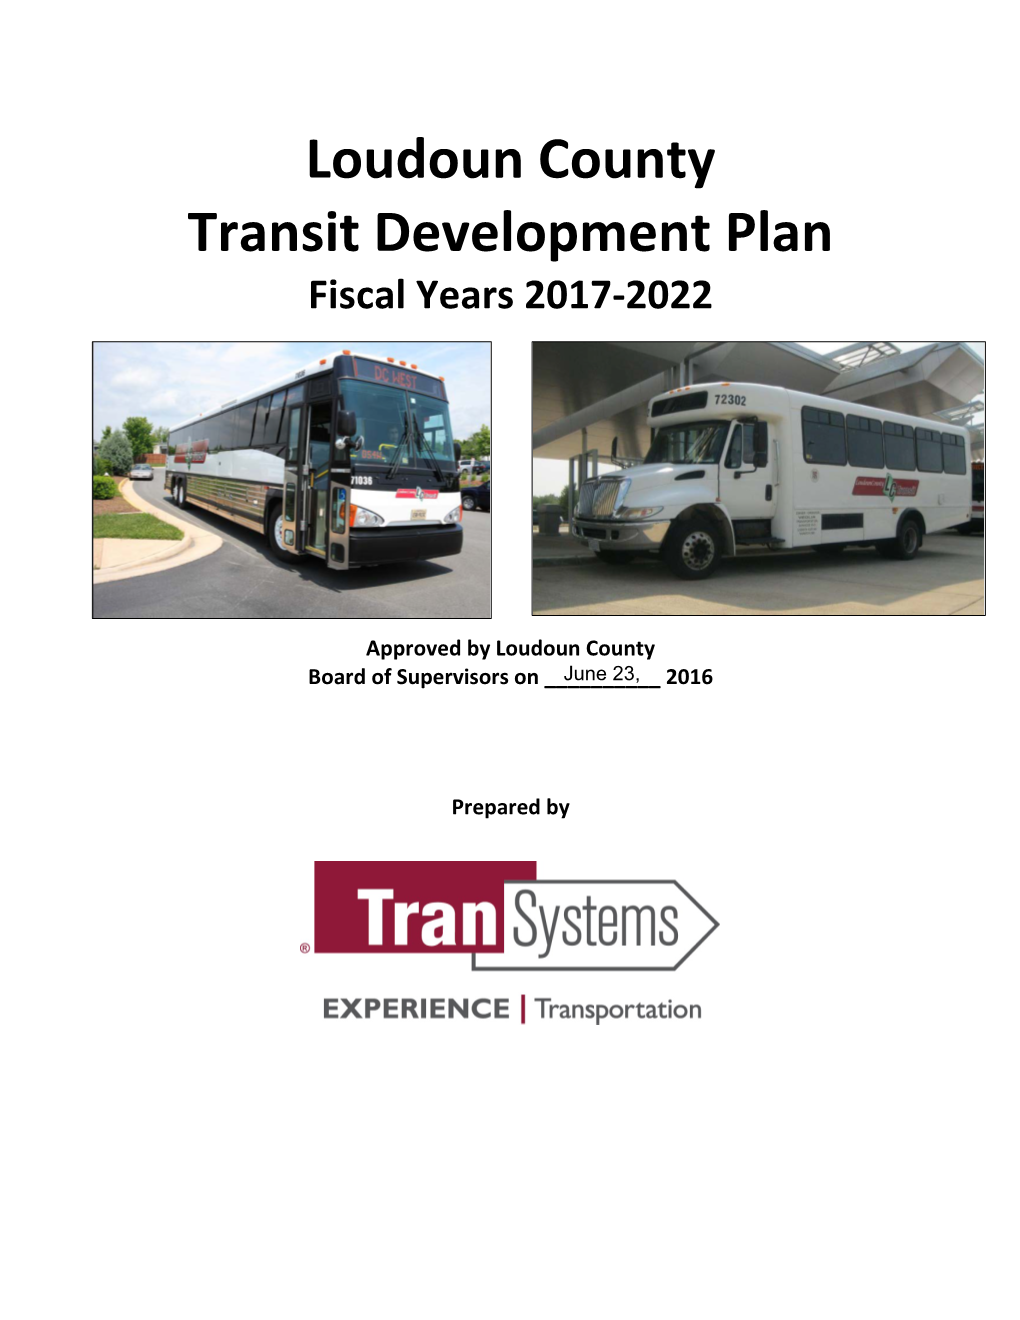 Loudoun County Transit Development Plan Fiscal Years 2017-2022